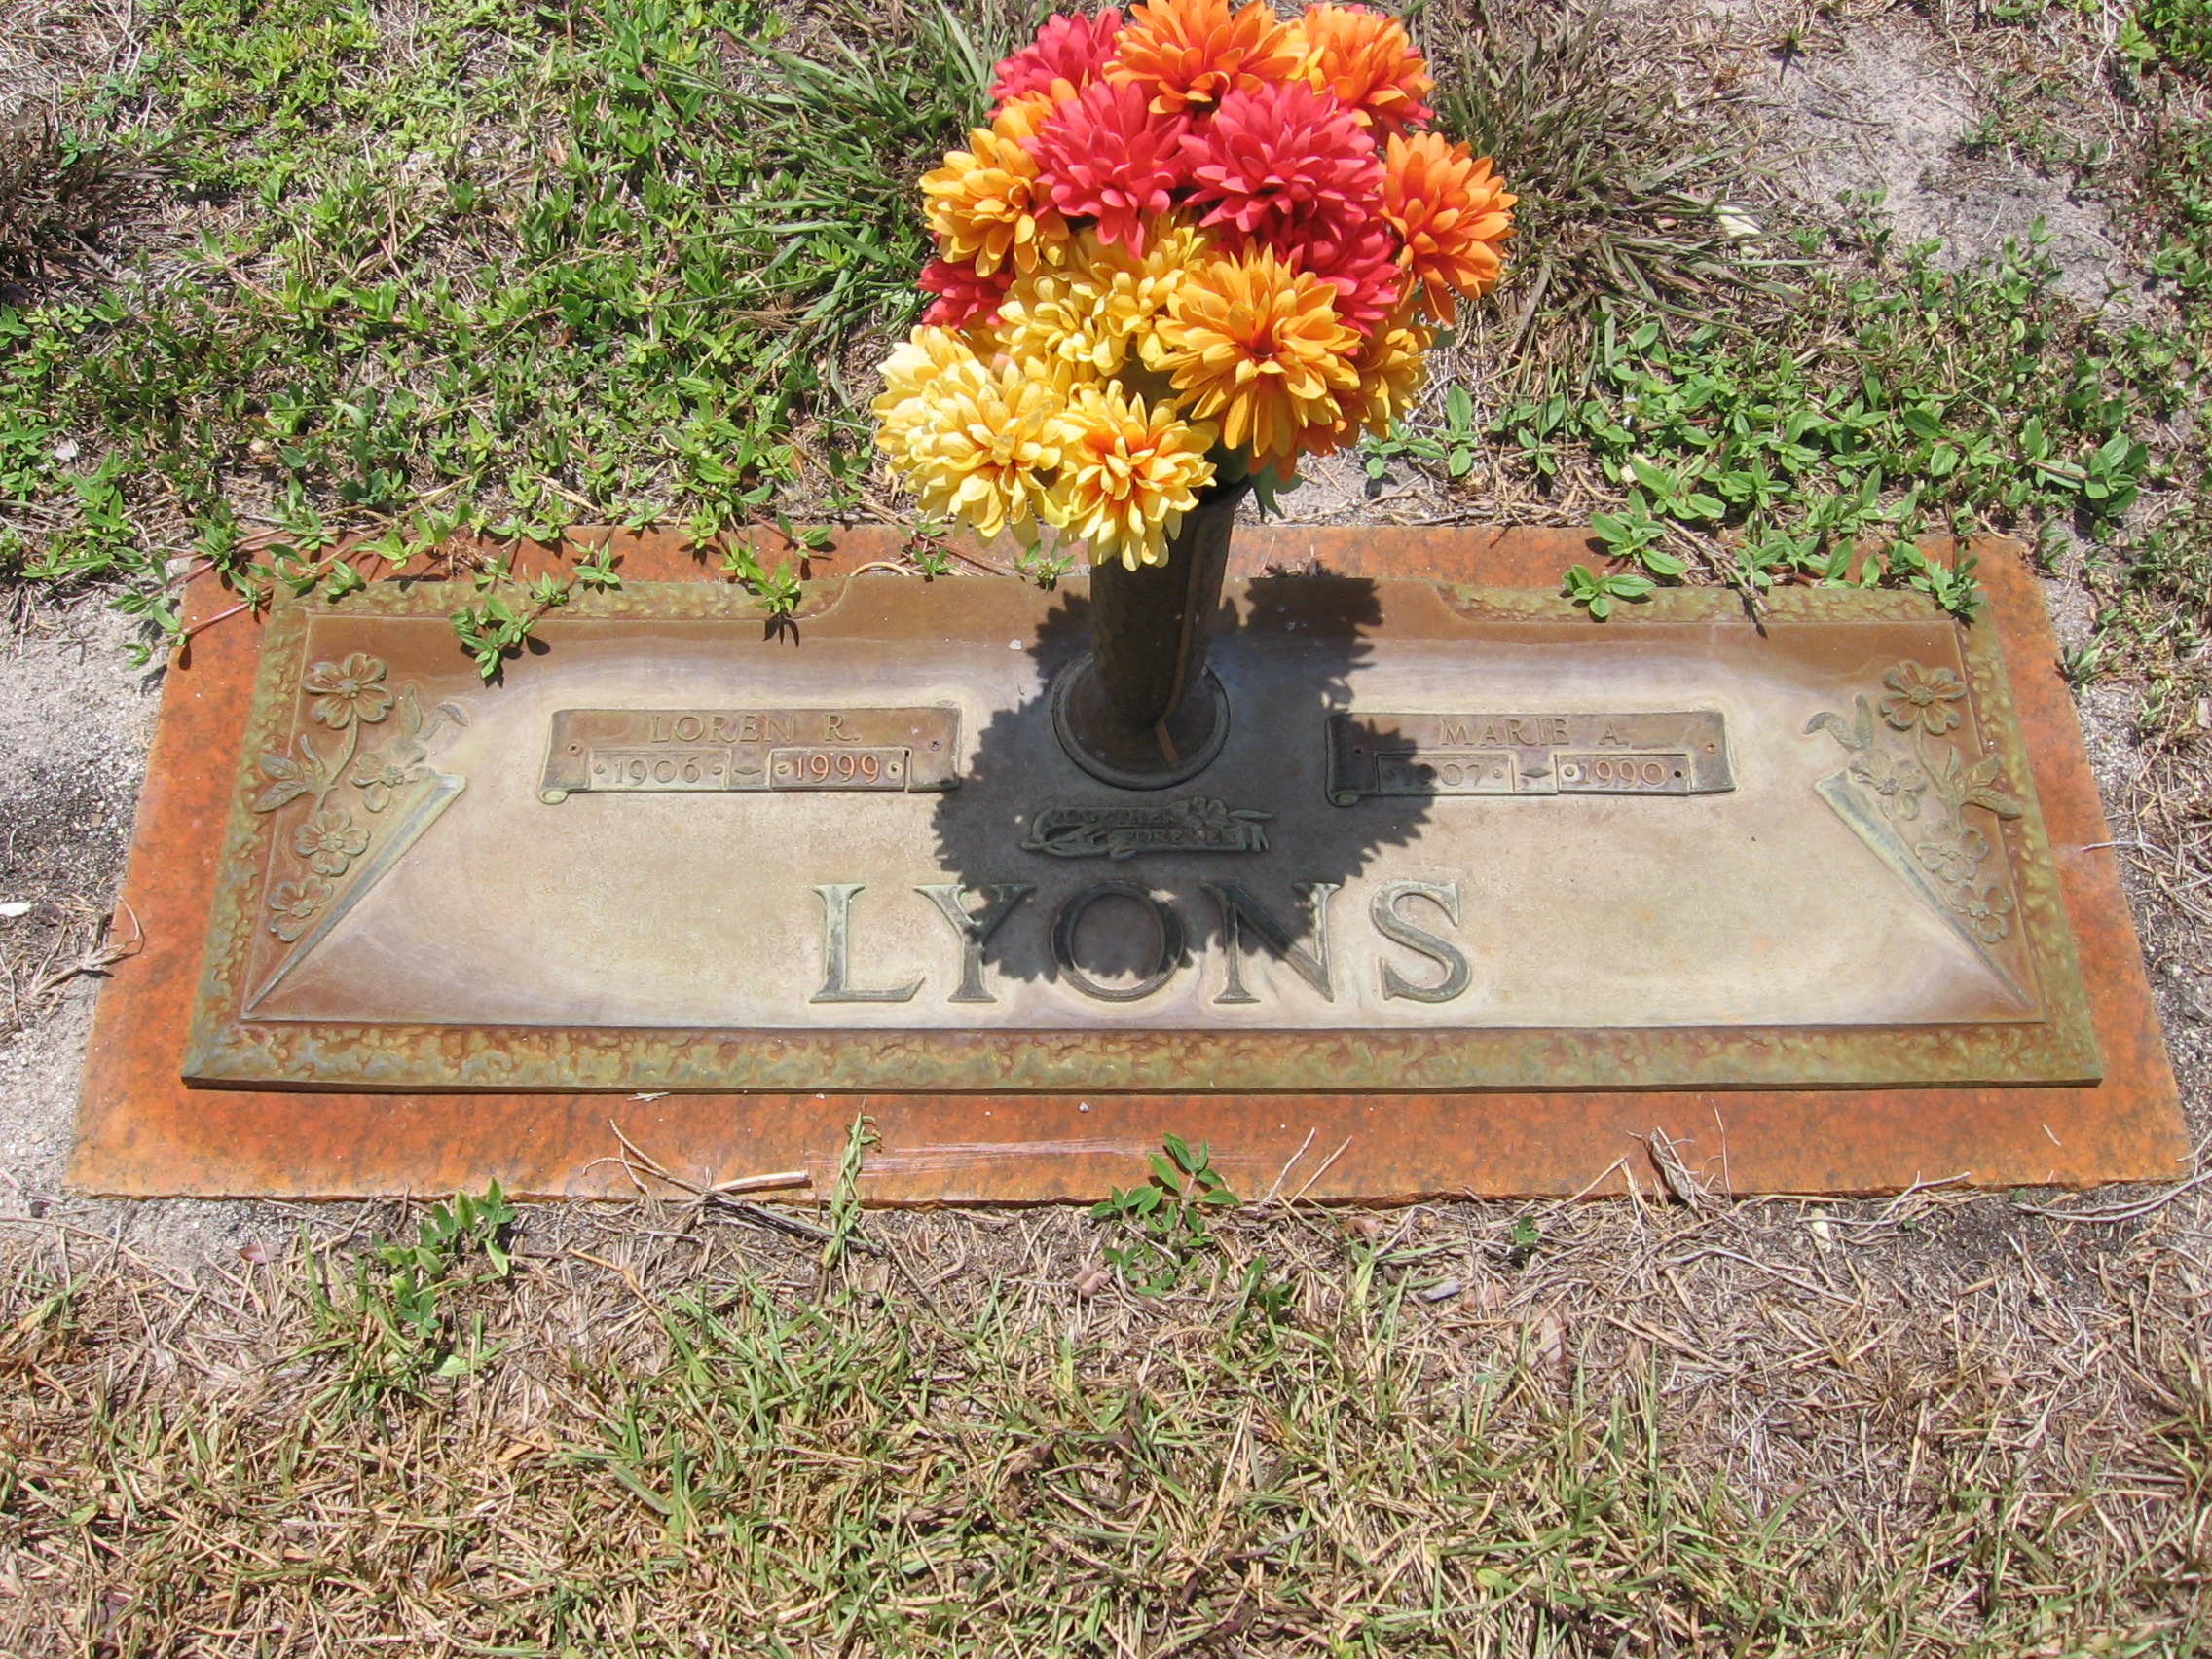 Loren R Lyons